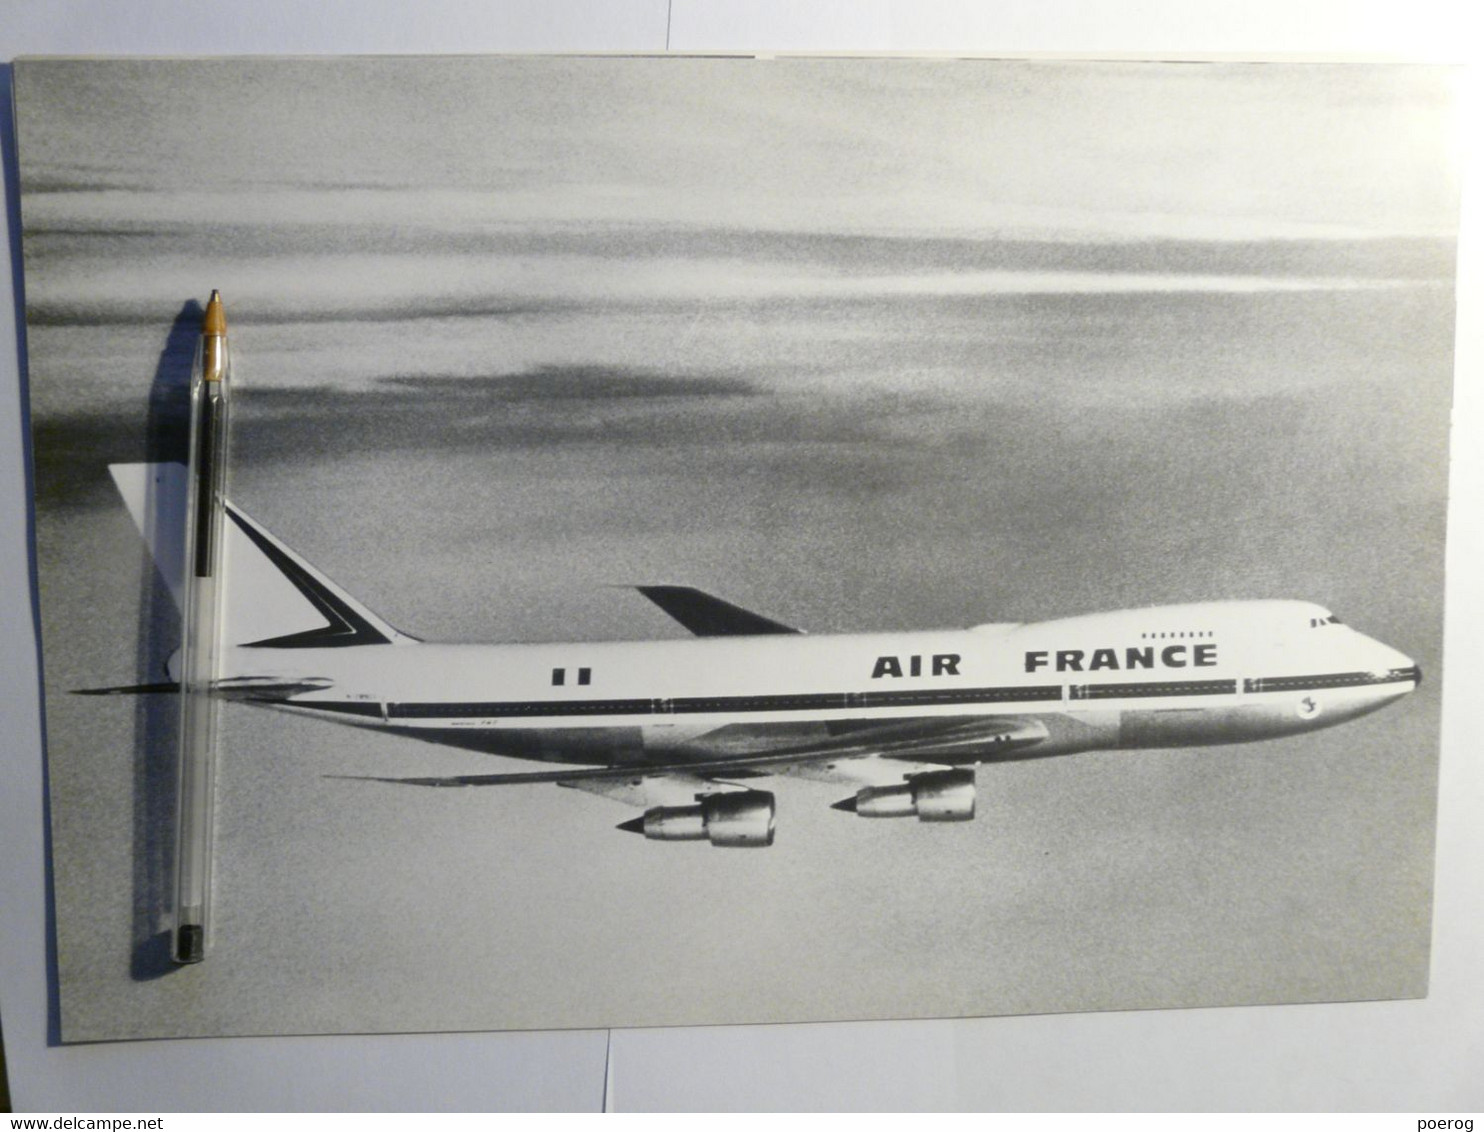 8 PHOTOS AVIONS AIR FRANCE DANS LEUR ENVELOPPE - SERVICE INFORMATION 1974 - CONCORDE BOEING 747 AIRBUS A300 CARAVELLE